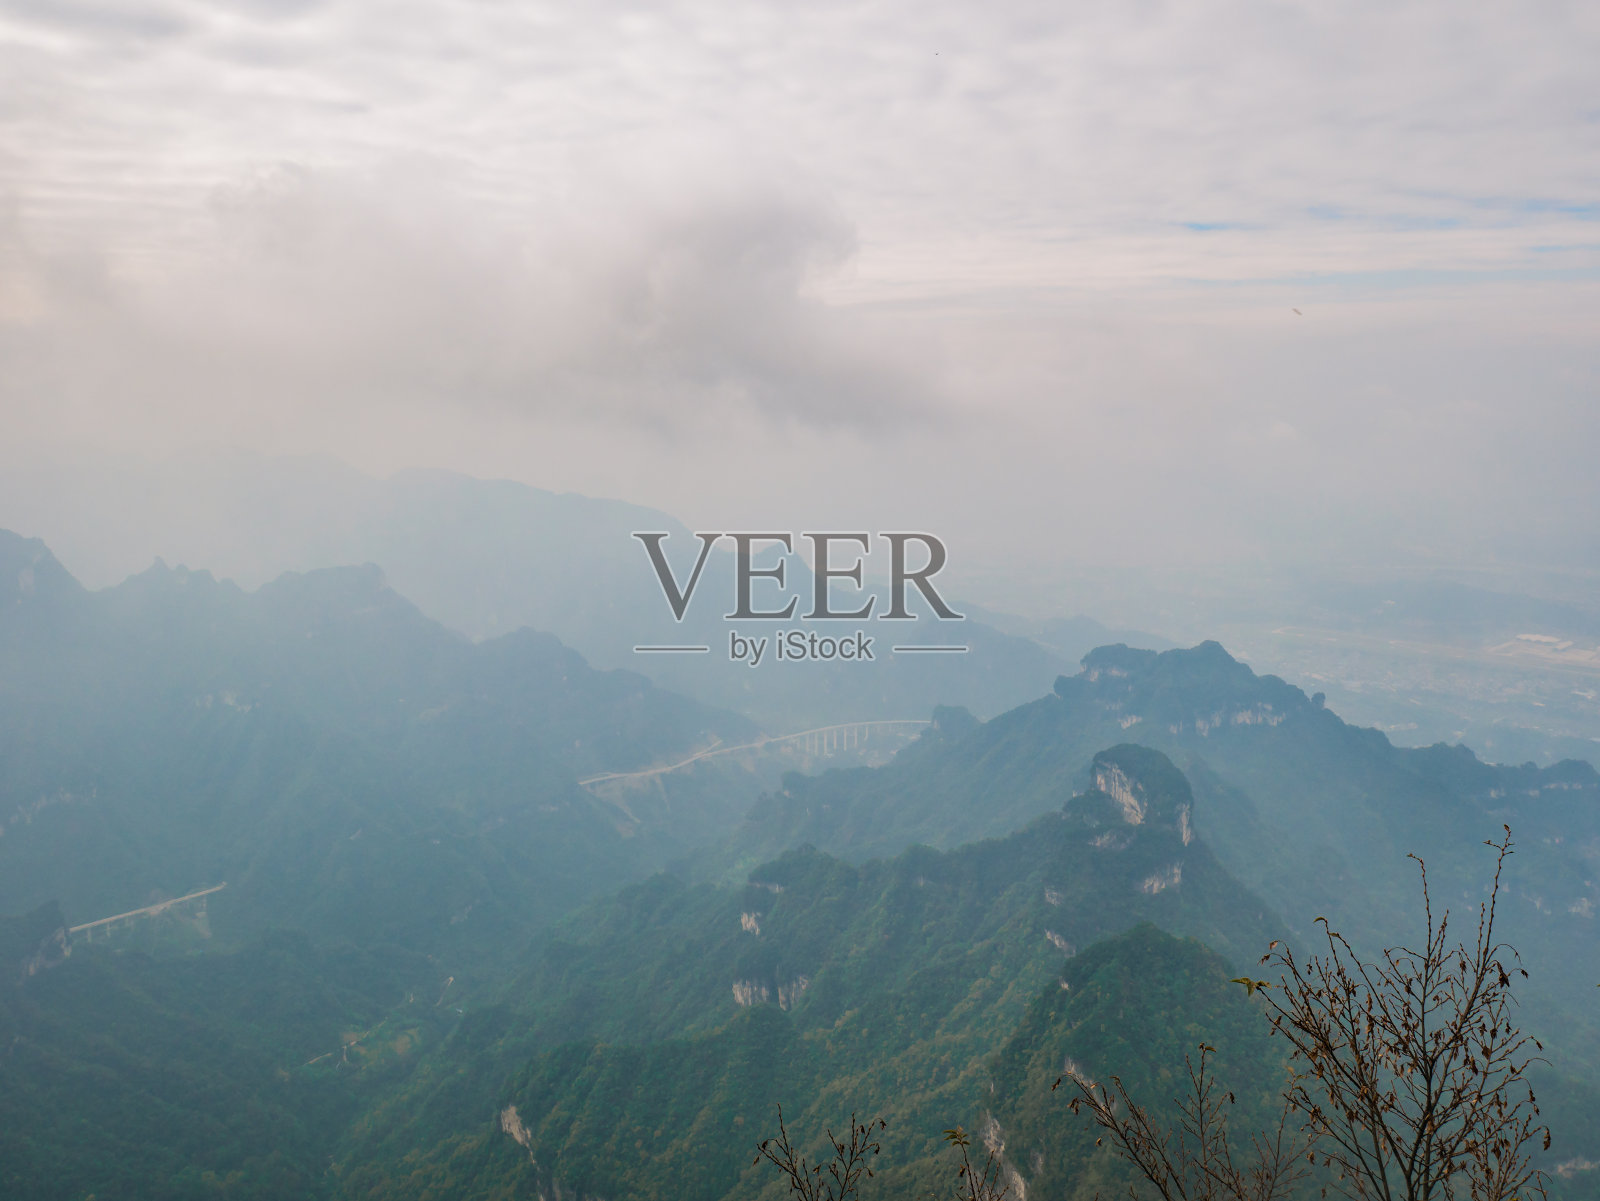 中国张家界天门山国家公园的美丽景色和晴朗的天空照片摄影图片